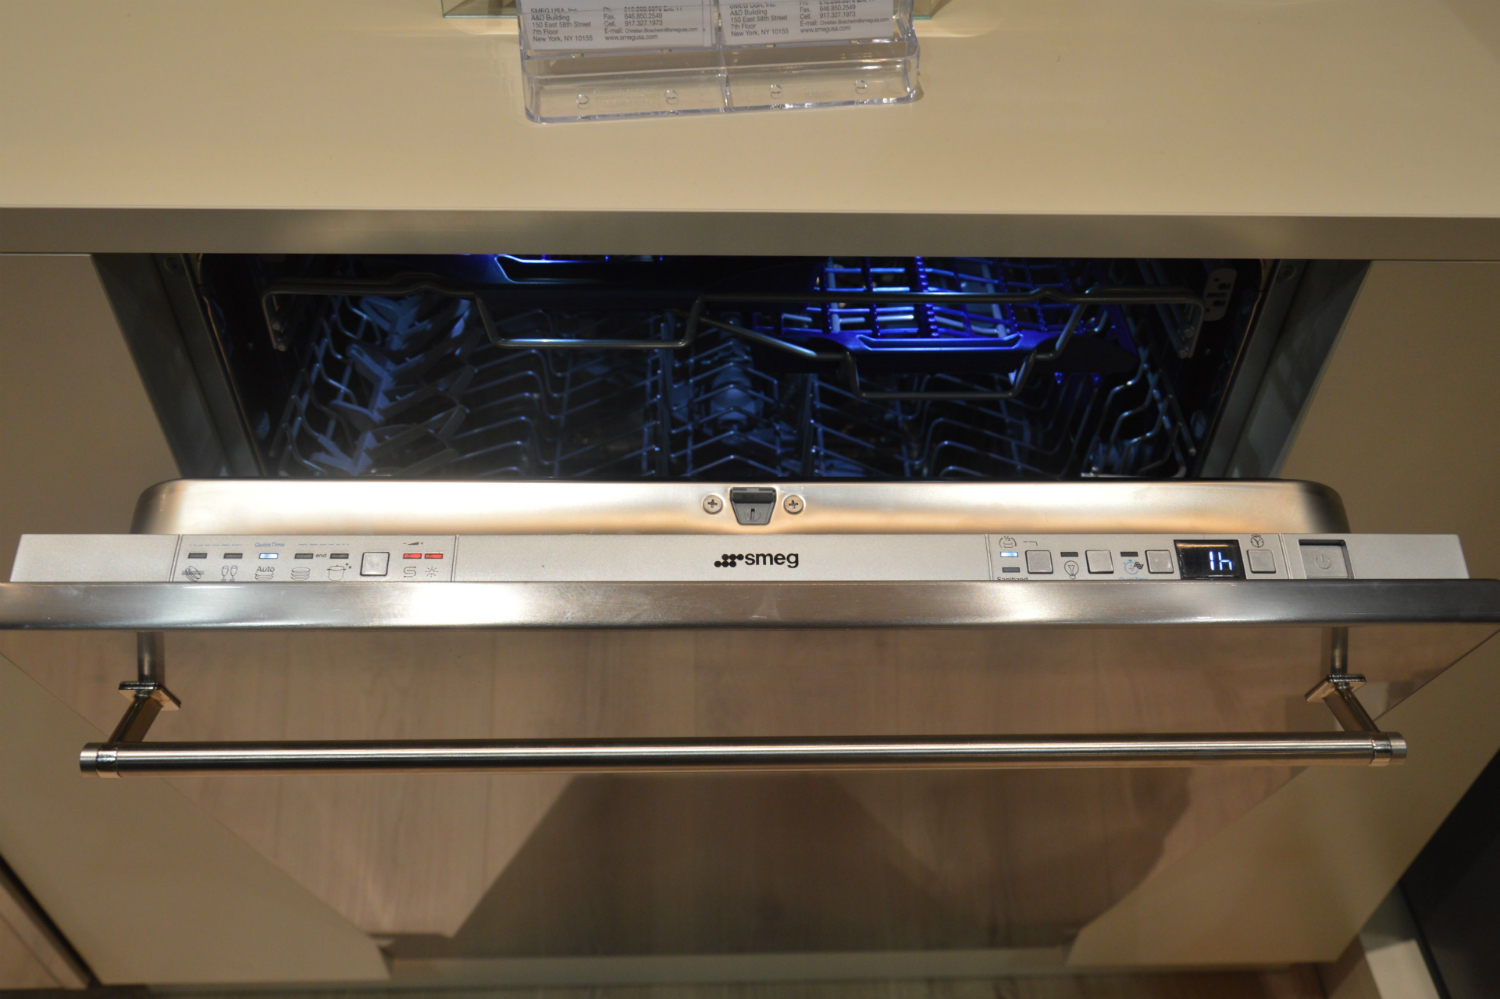 appliance trends kbis 2017 smeg third rack dishwasher